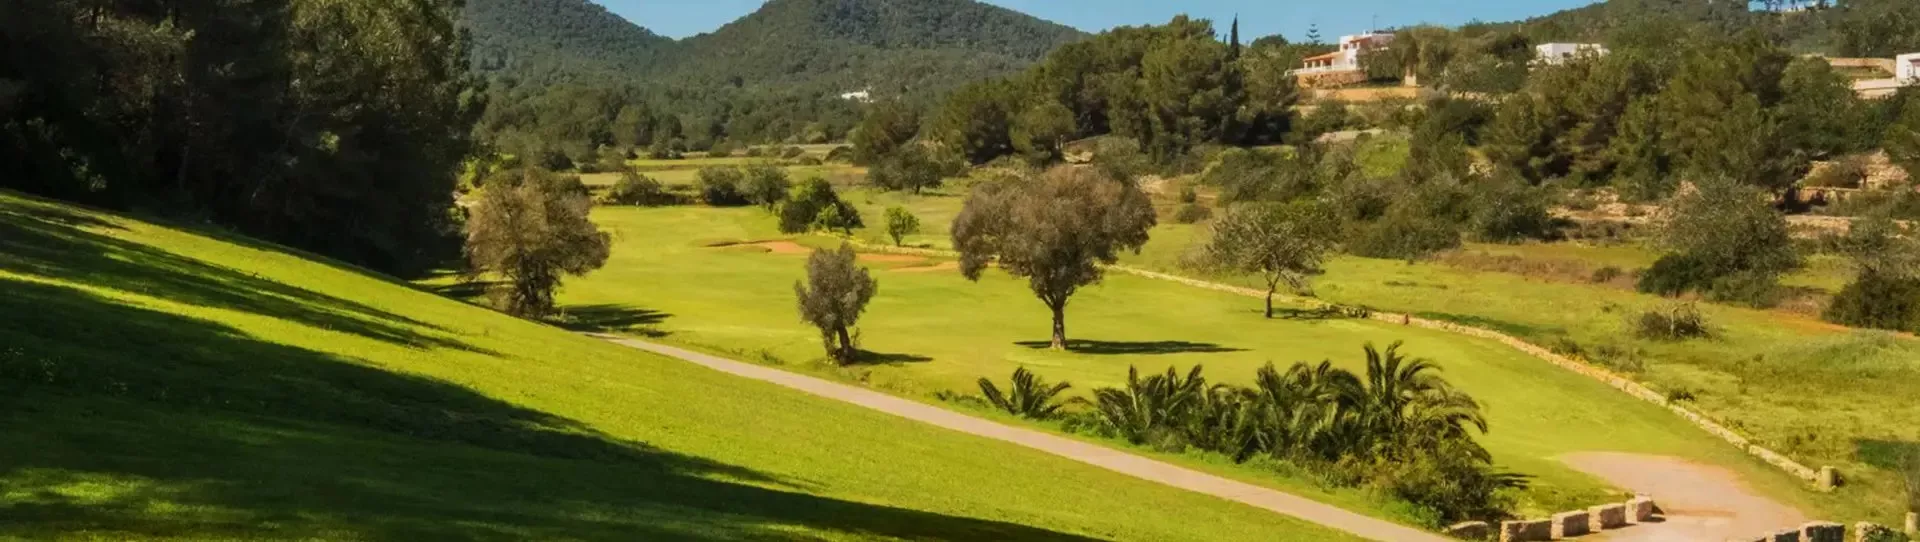 Spain golf courses - Golf de Ibiza II Roca Llisa - Photo 2